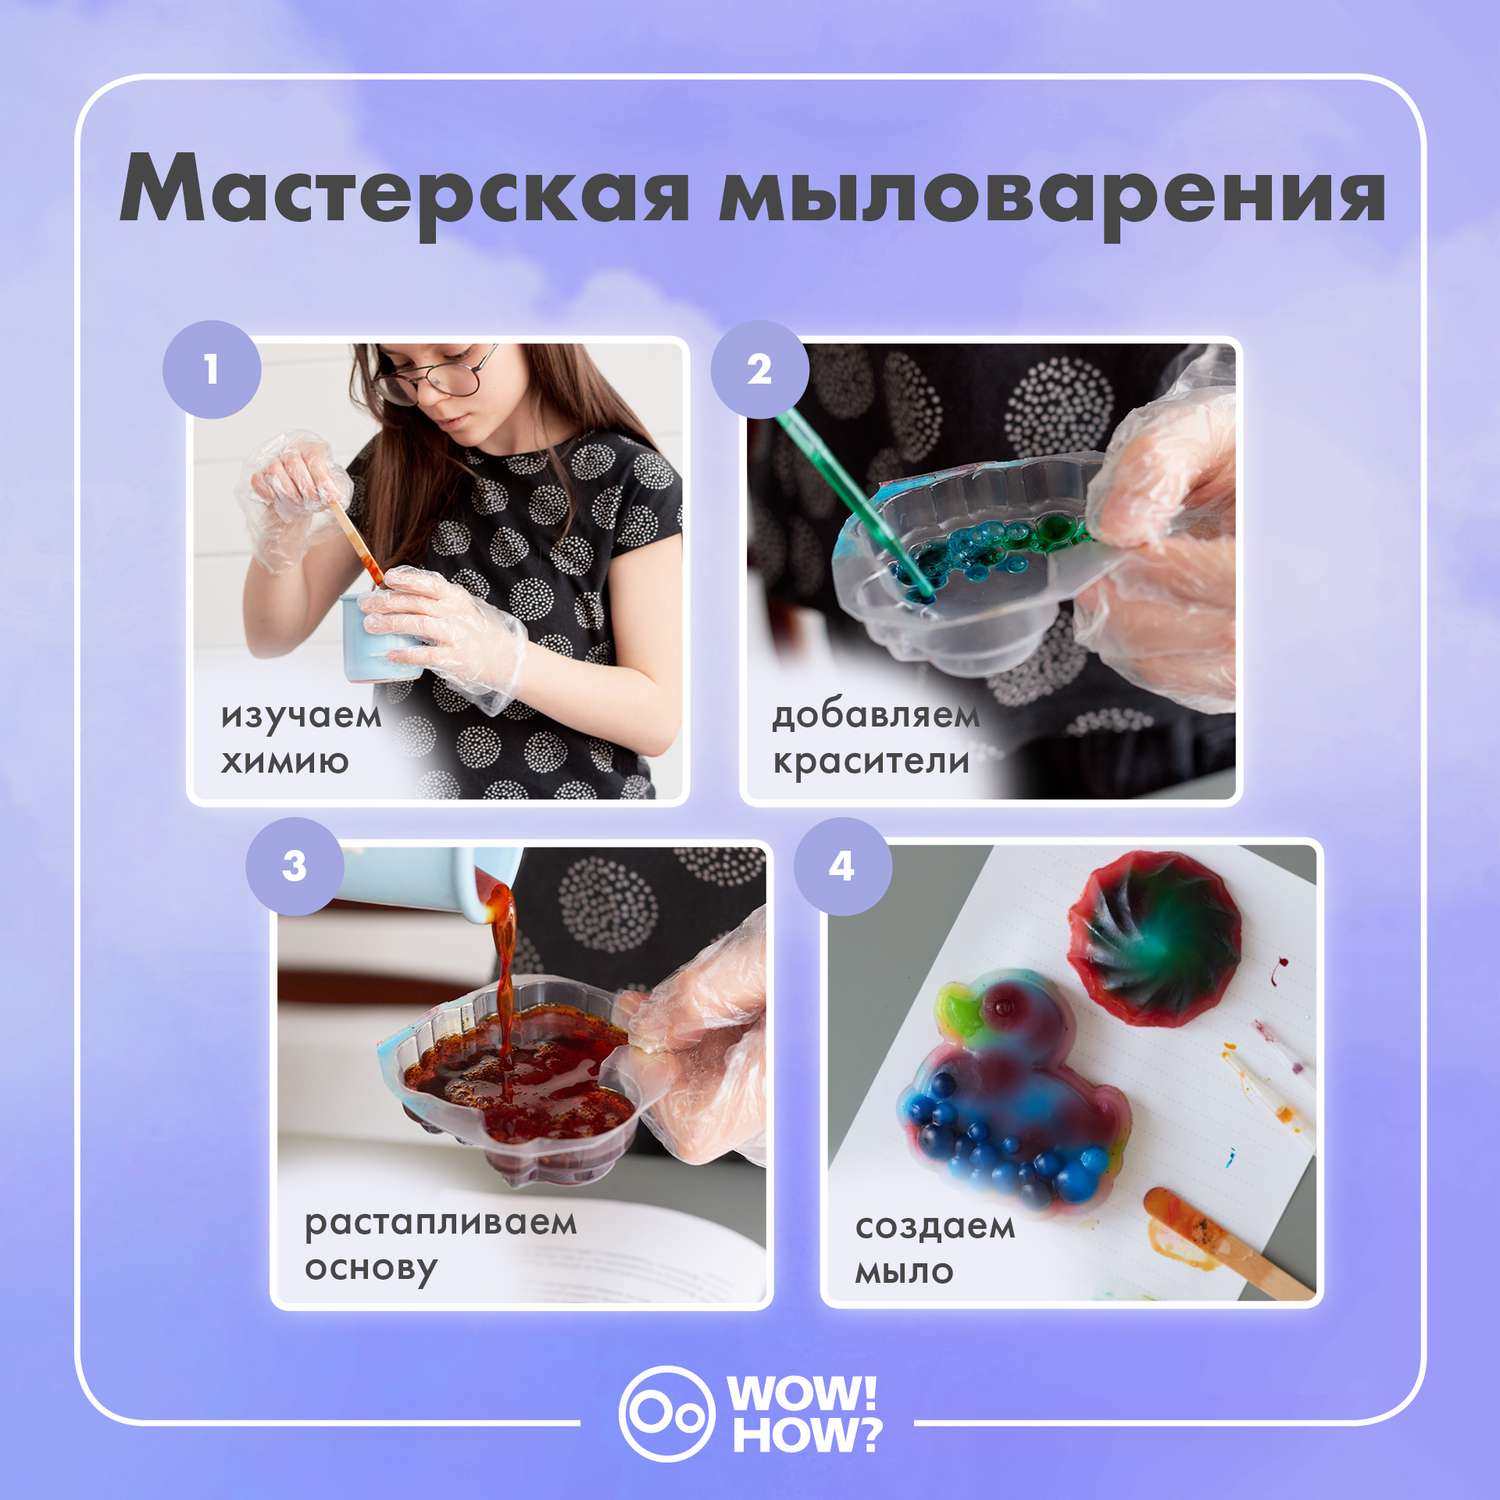 Наборы для мыловарения | Товары для мыловарения и домашней косметики EasySoap.com.ua